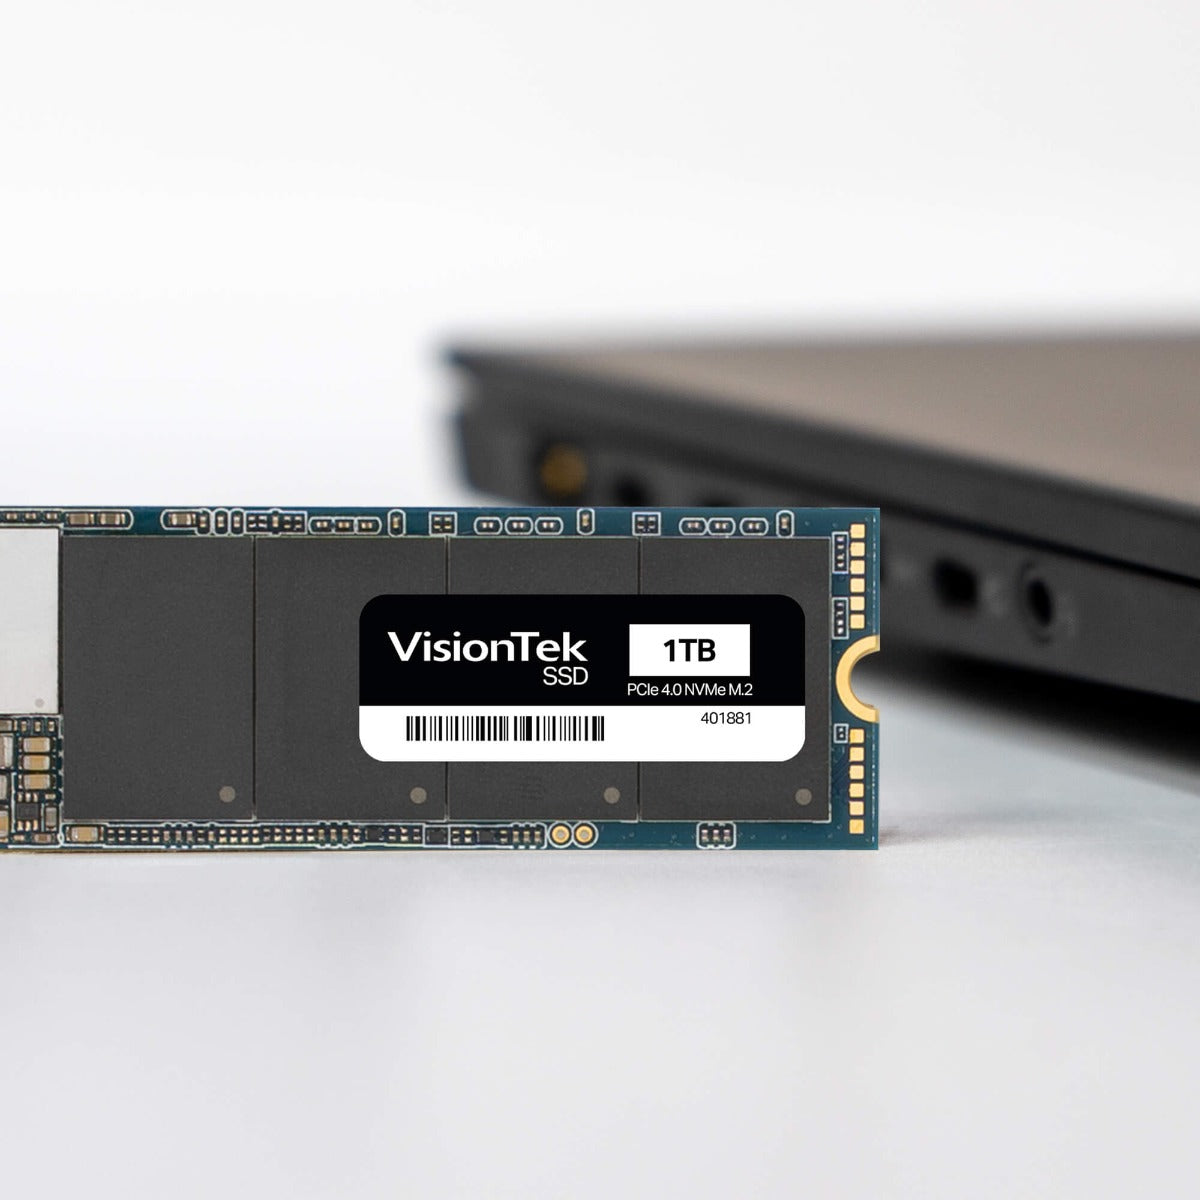 VisionTek DLX4 2242 M.2 PCIe 4.0 x4 SSD (NVMe) - 1TB